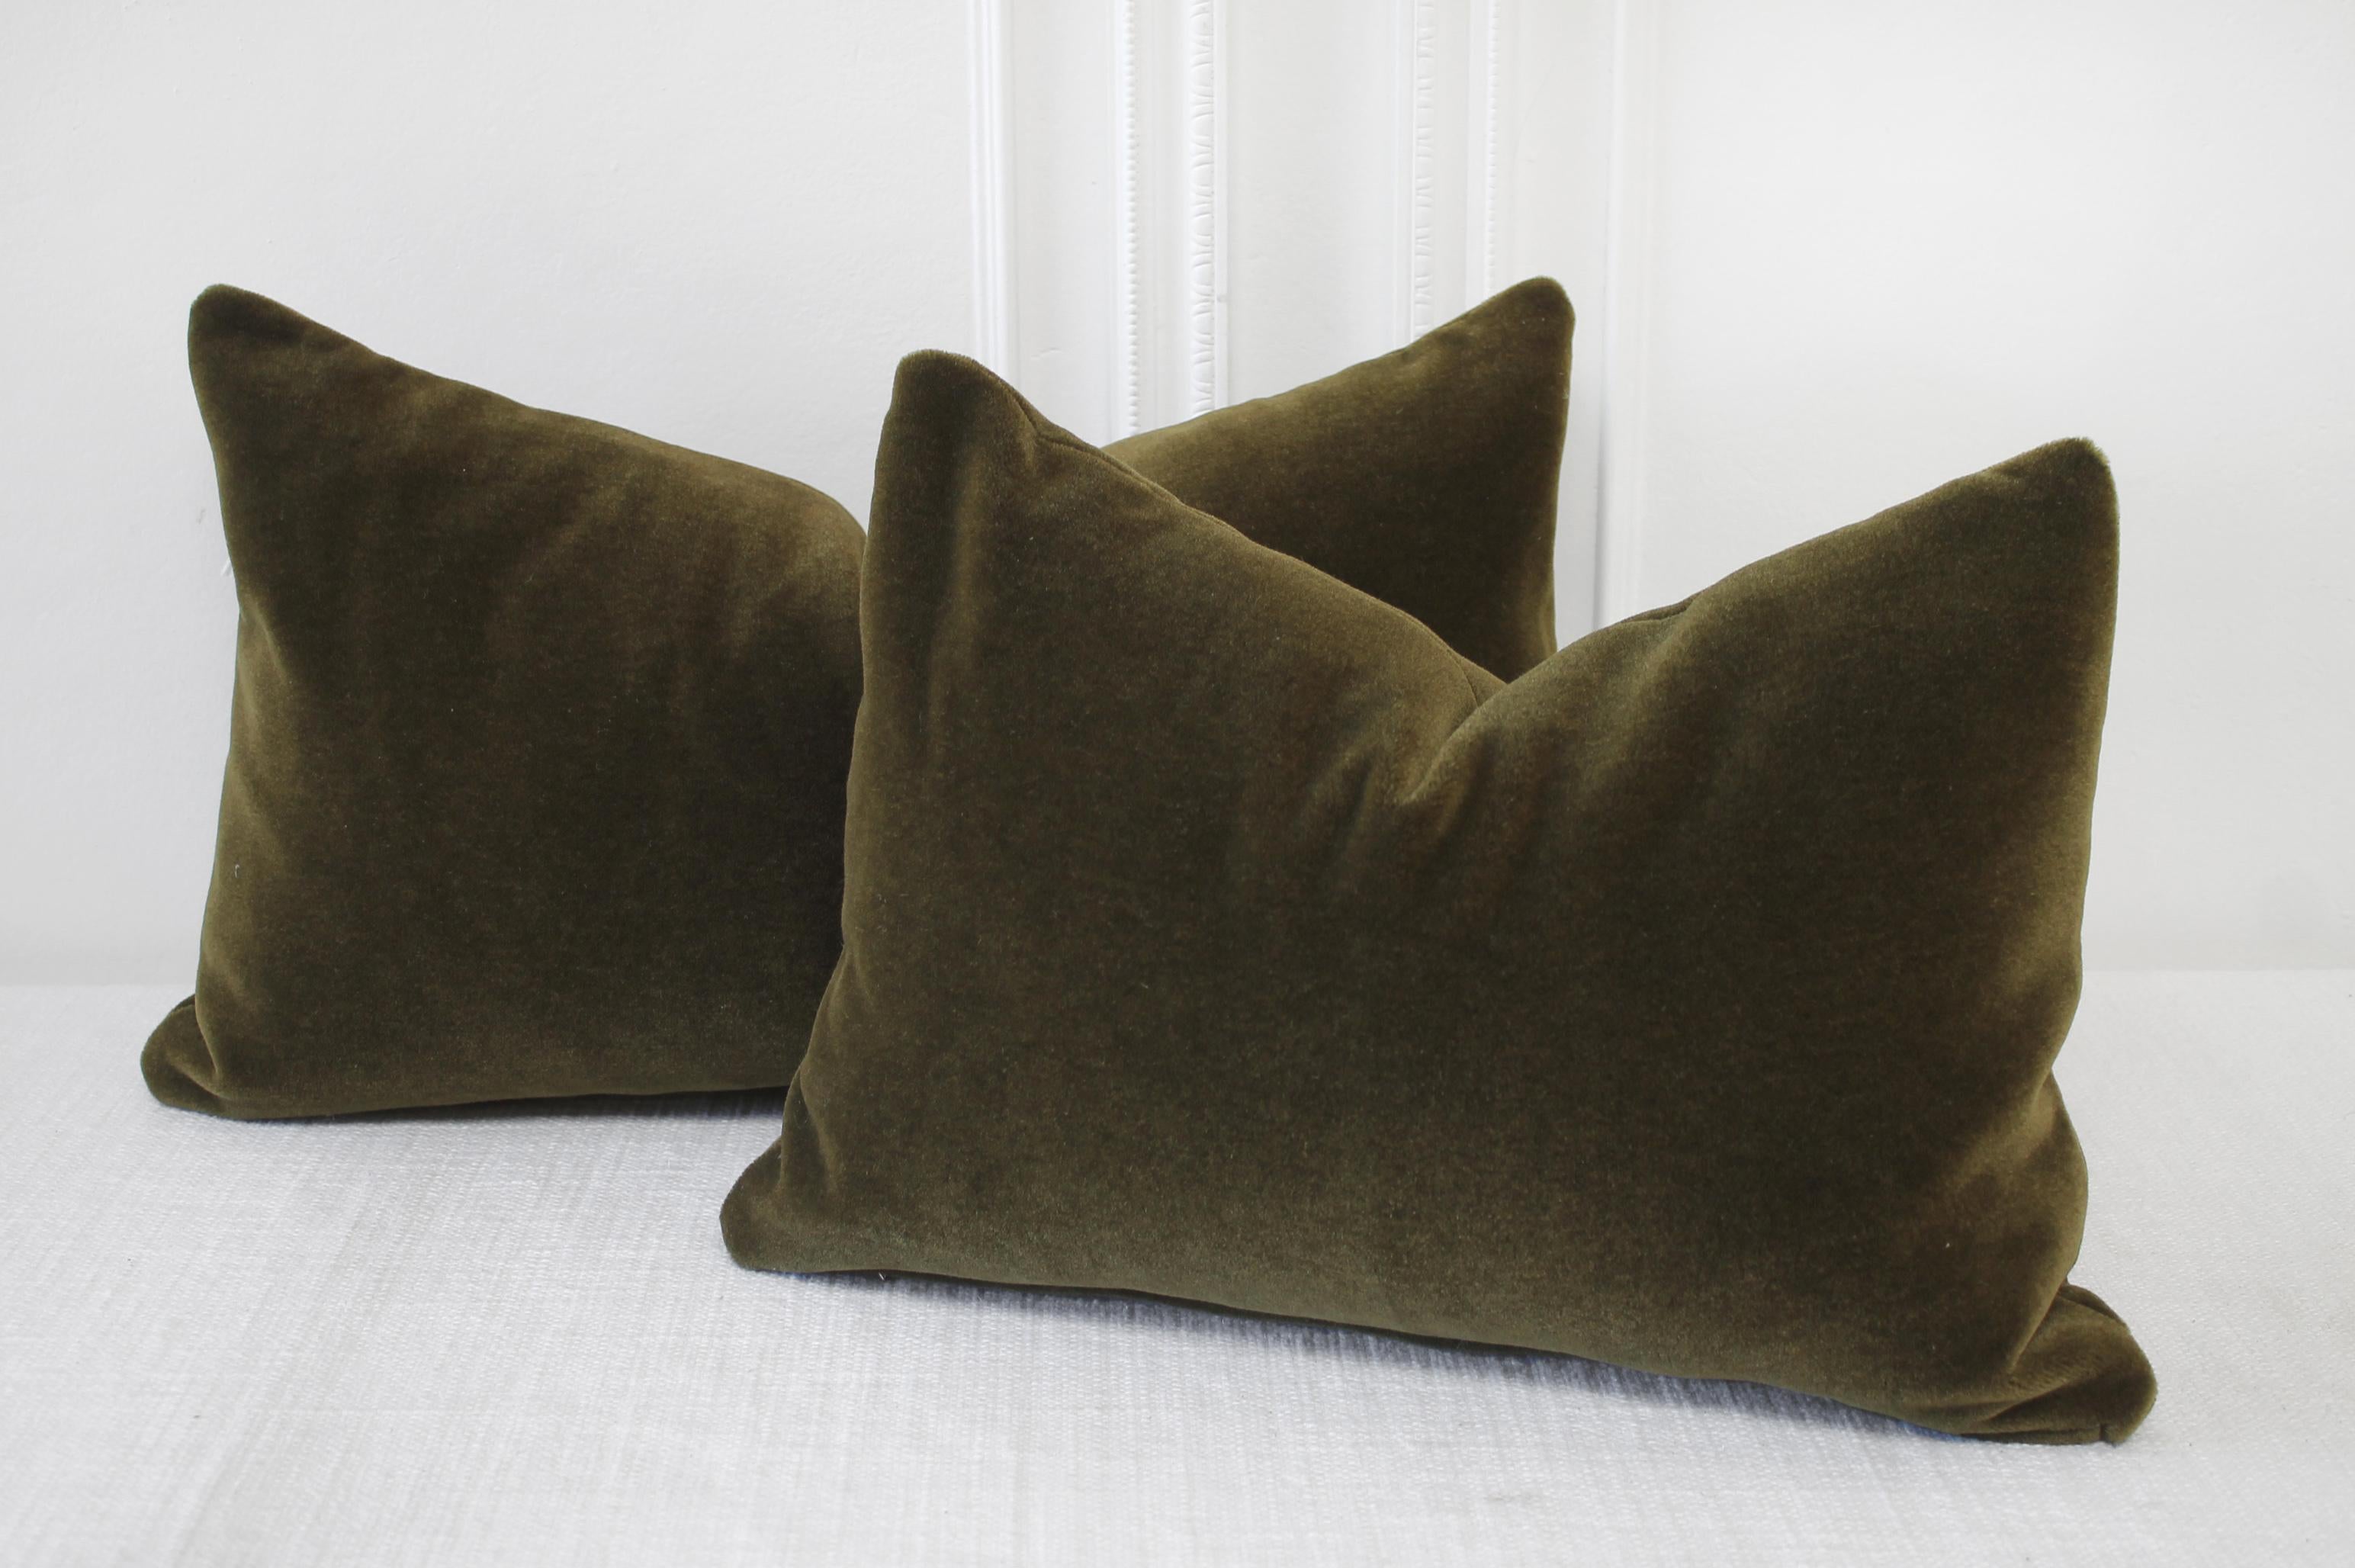 moss green pillows